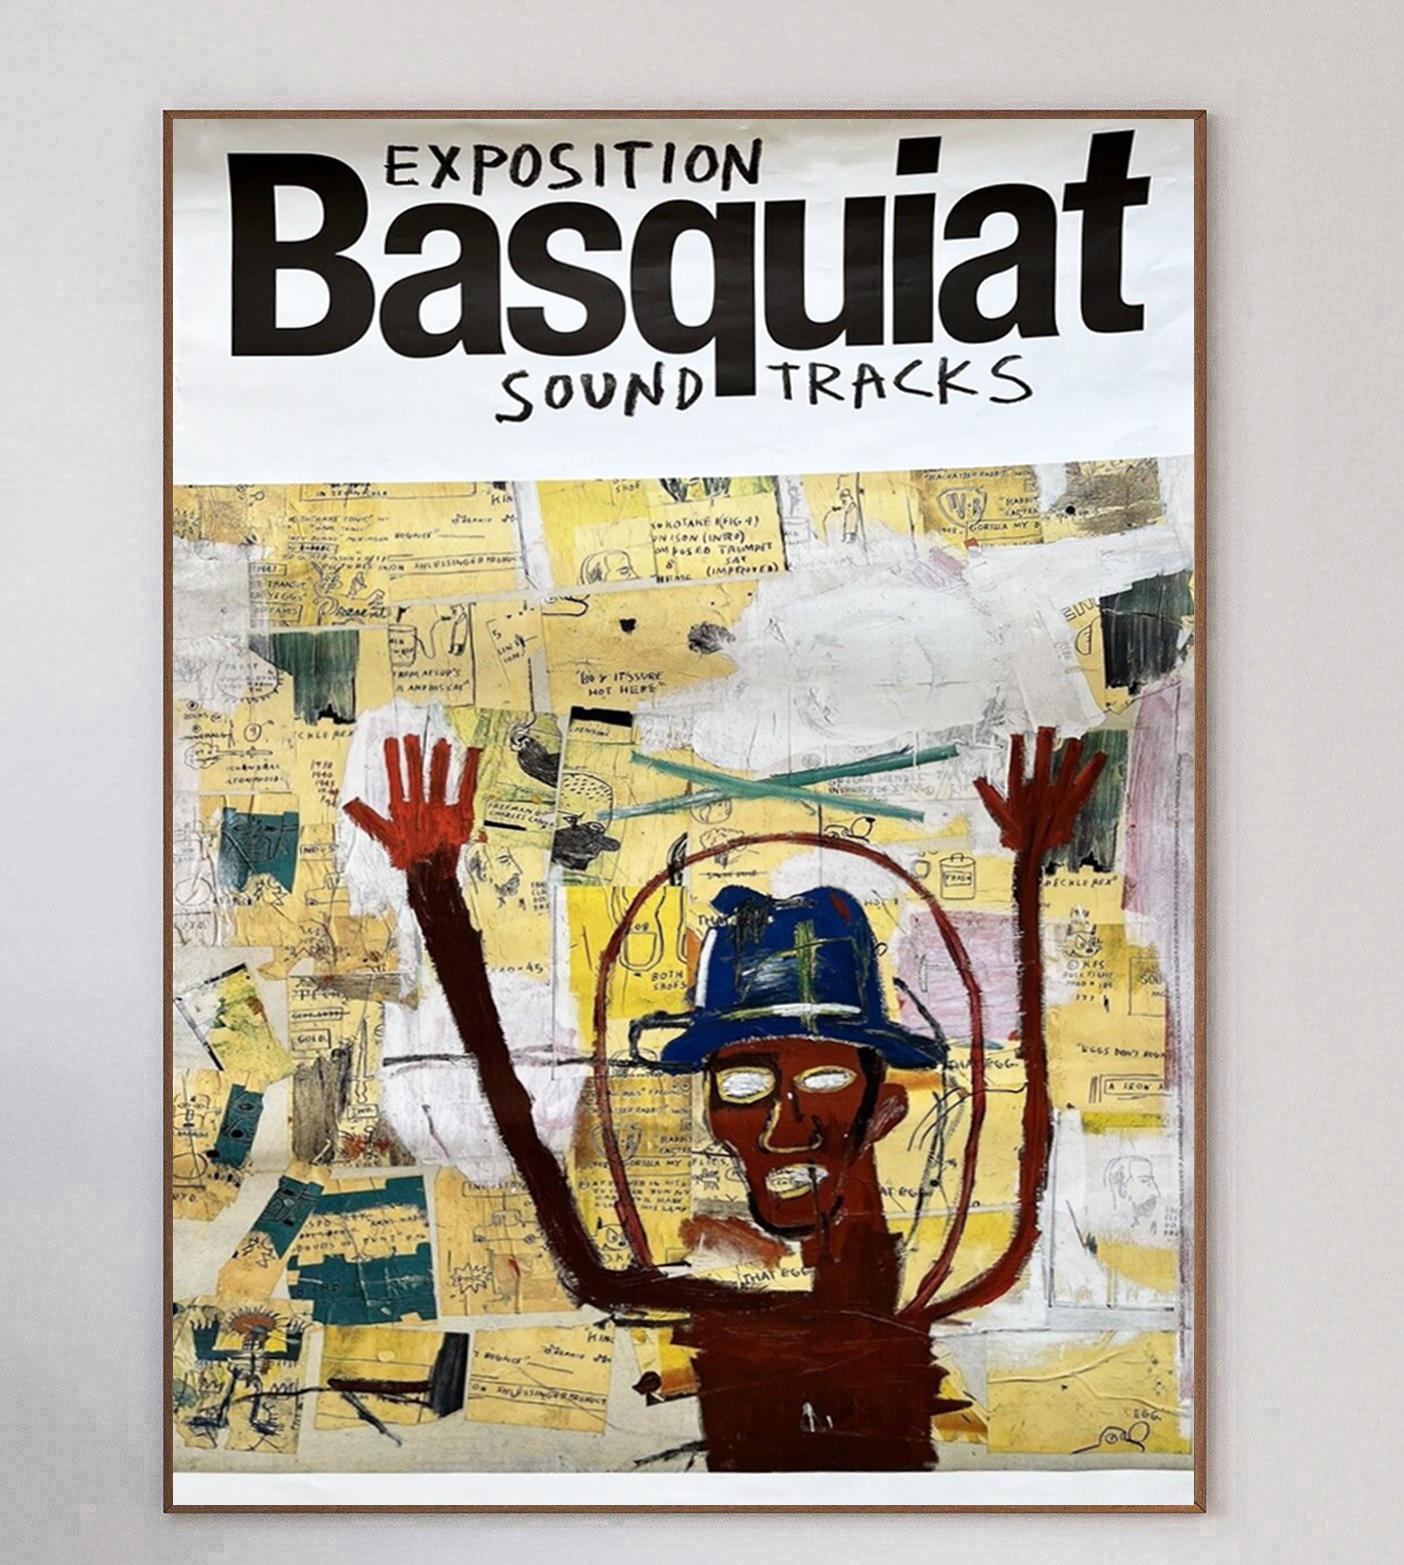 Jean-Michel Basquiat, l'un des artistes les plus influents du 20e† siècle, s'est fait connaître dans les années 1970 et au début des années 1980. Ses œuvres néo-expressionnistes, qui ont permis de réaliser tant de choses en si peu de temps, étaient